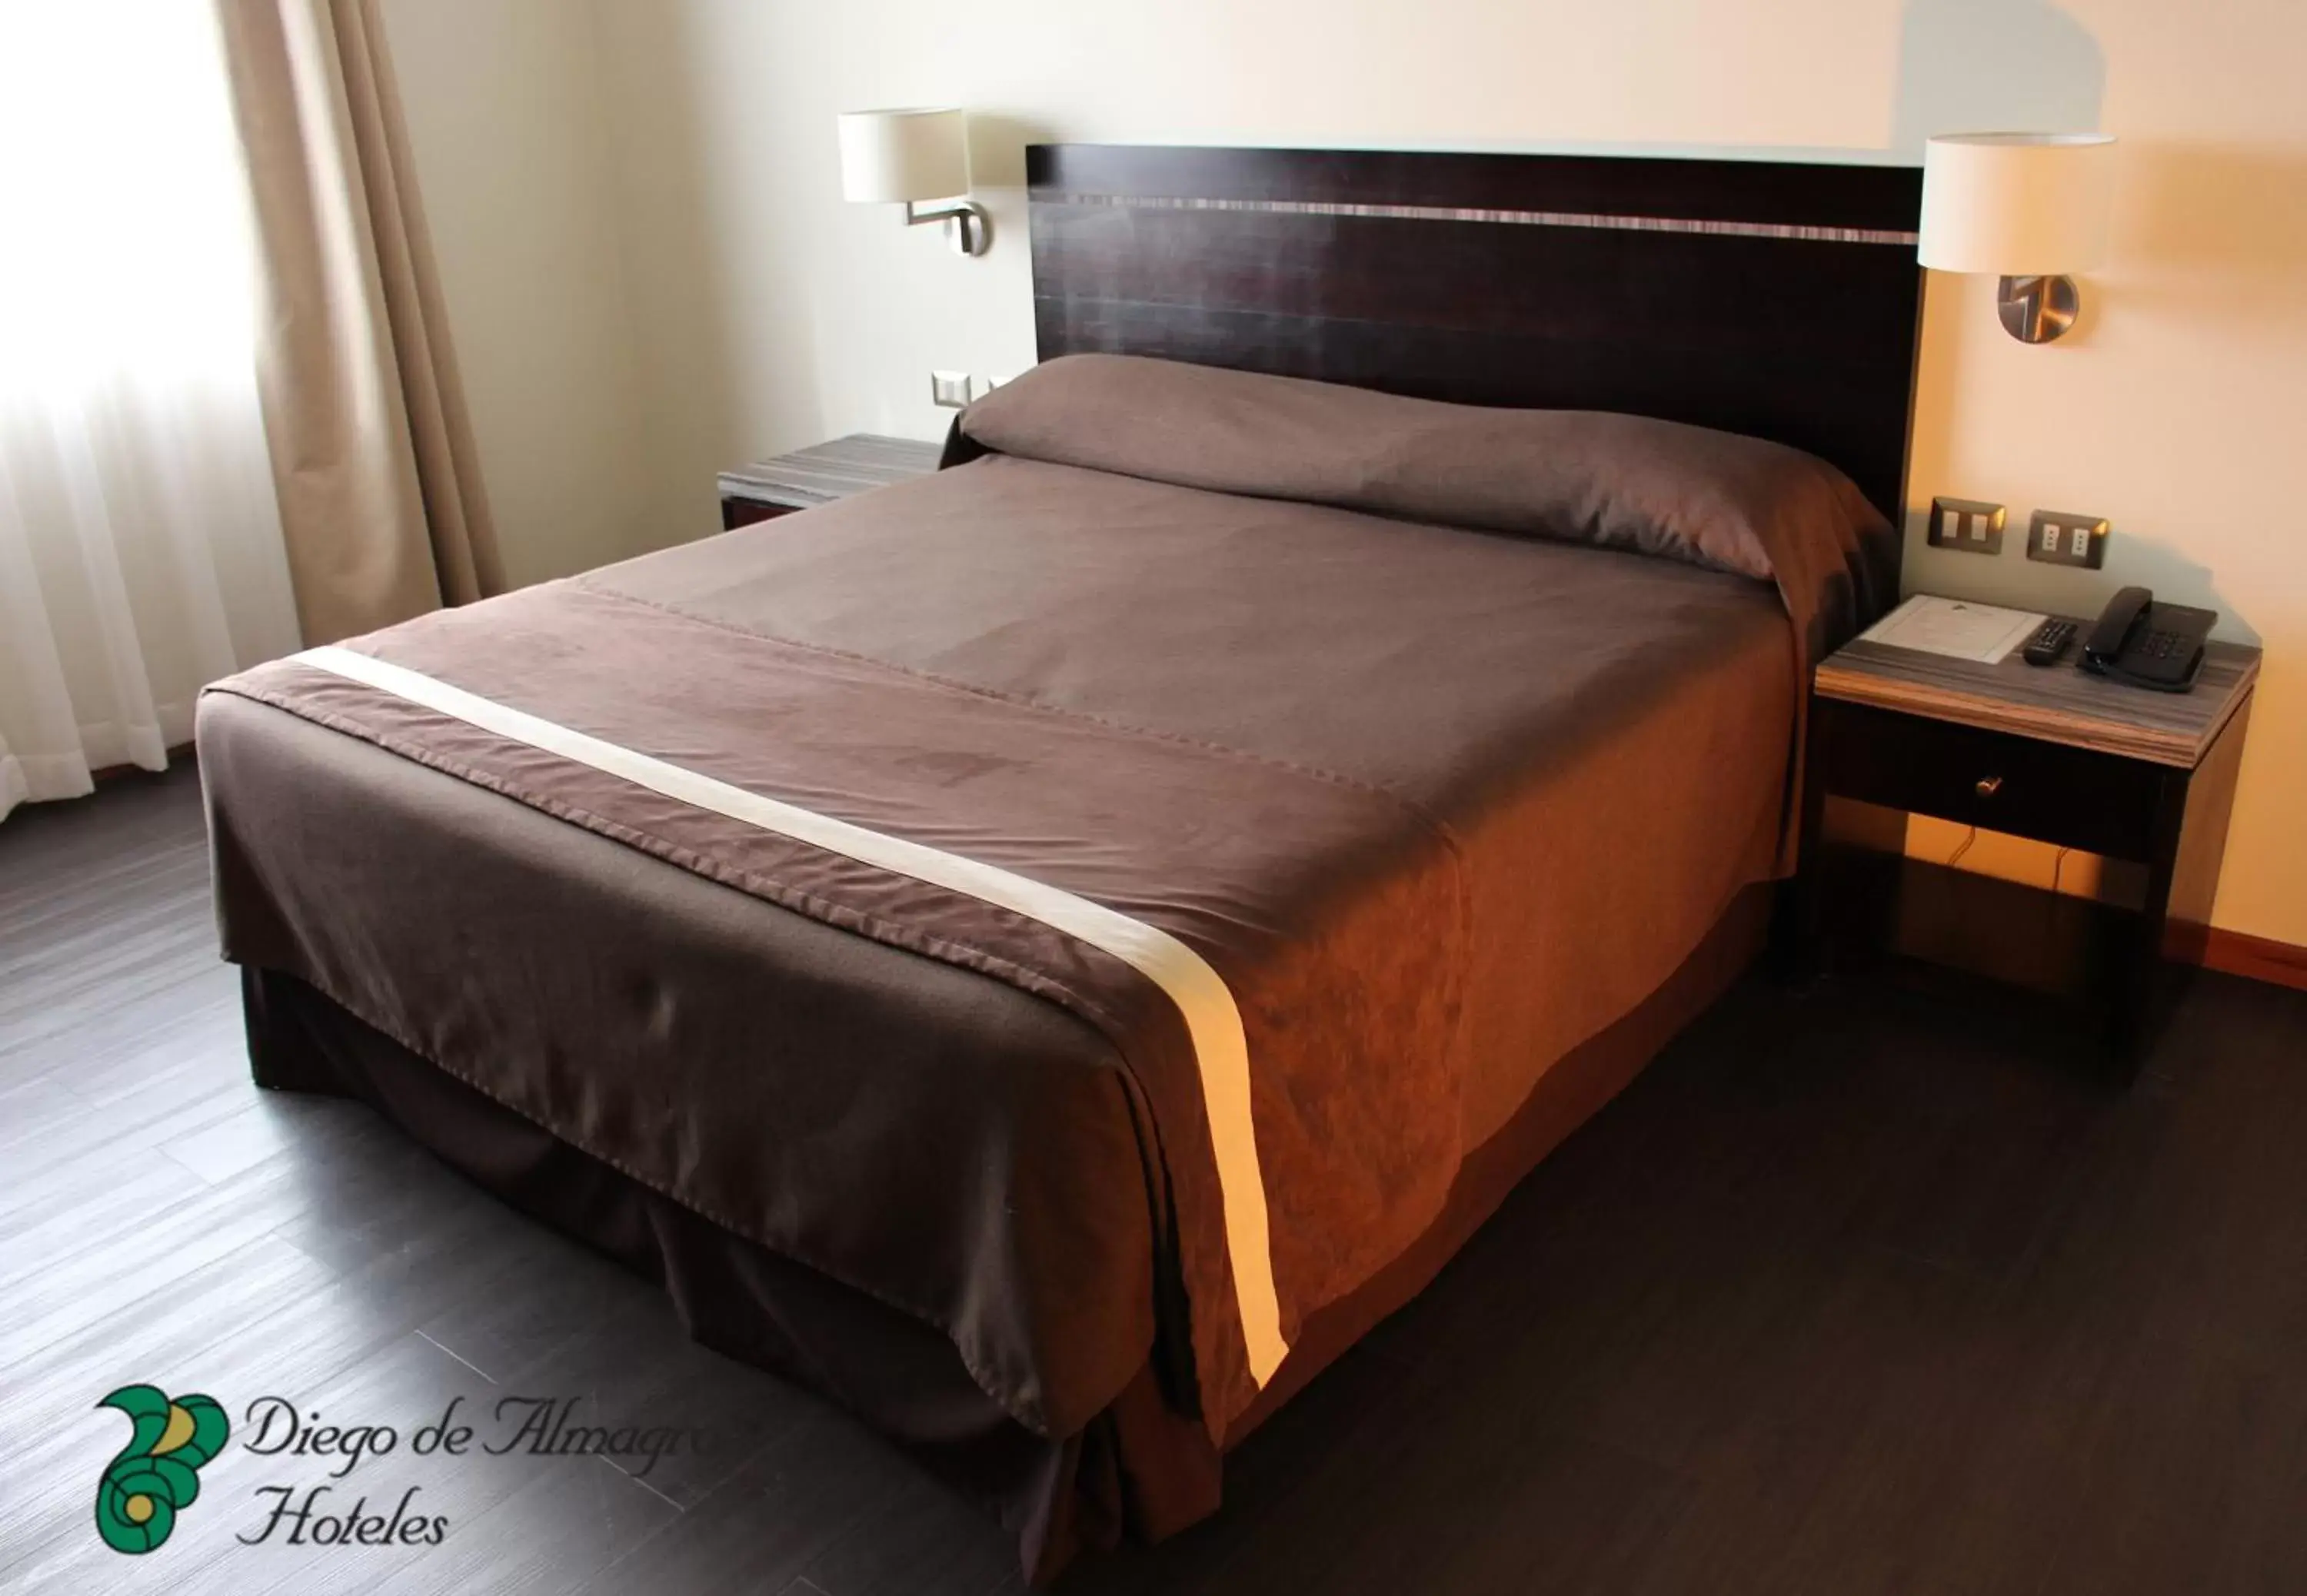 Bed in Hotel Diego de Almagro Curicó